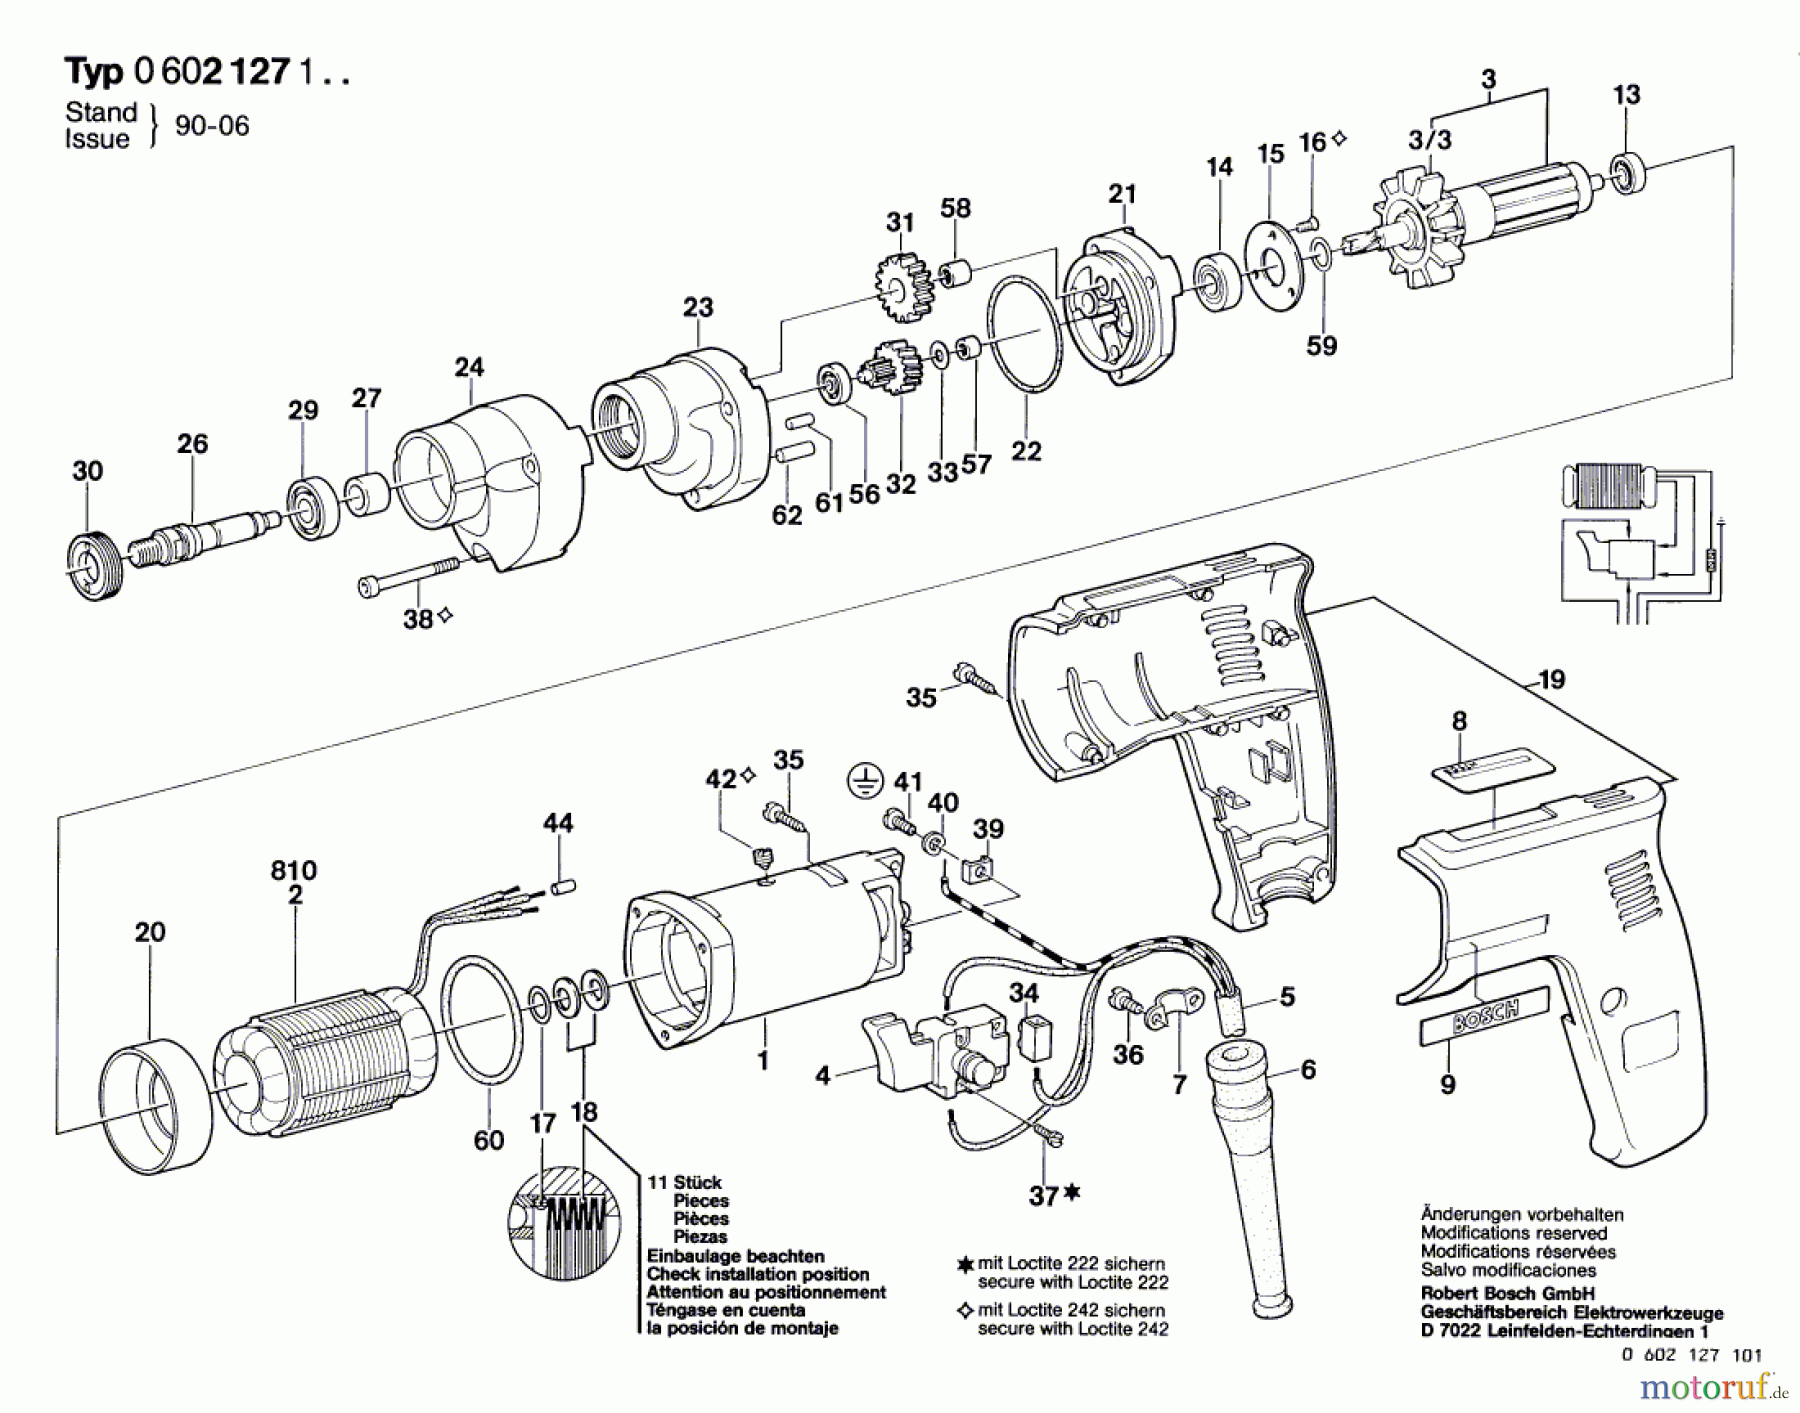  Bosch Werkzeug Hf-Bohrmaschine GR.55 Seite 1